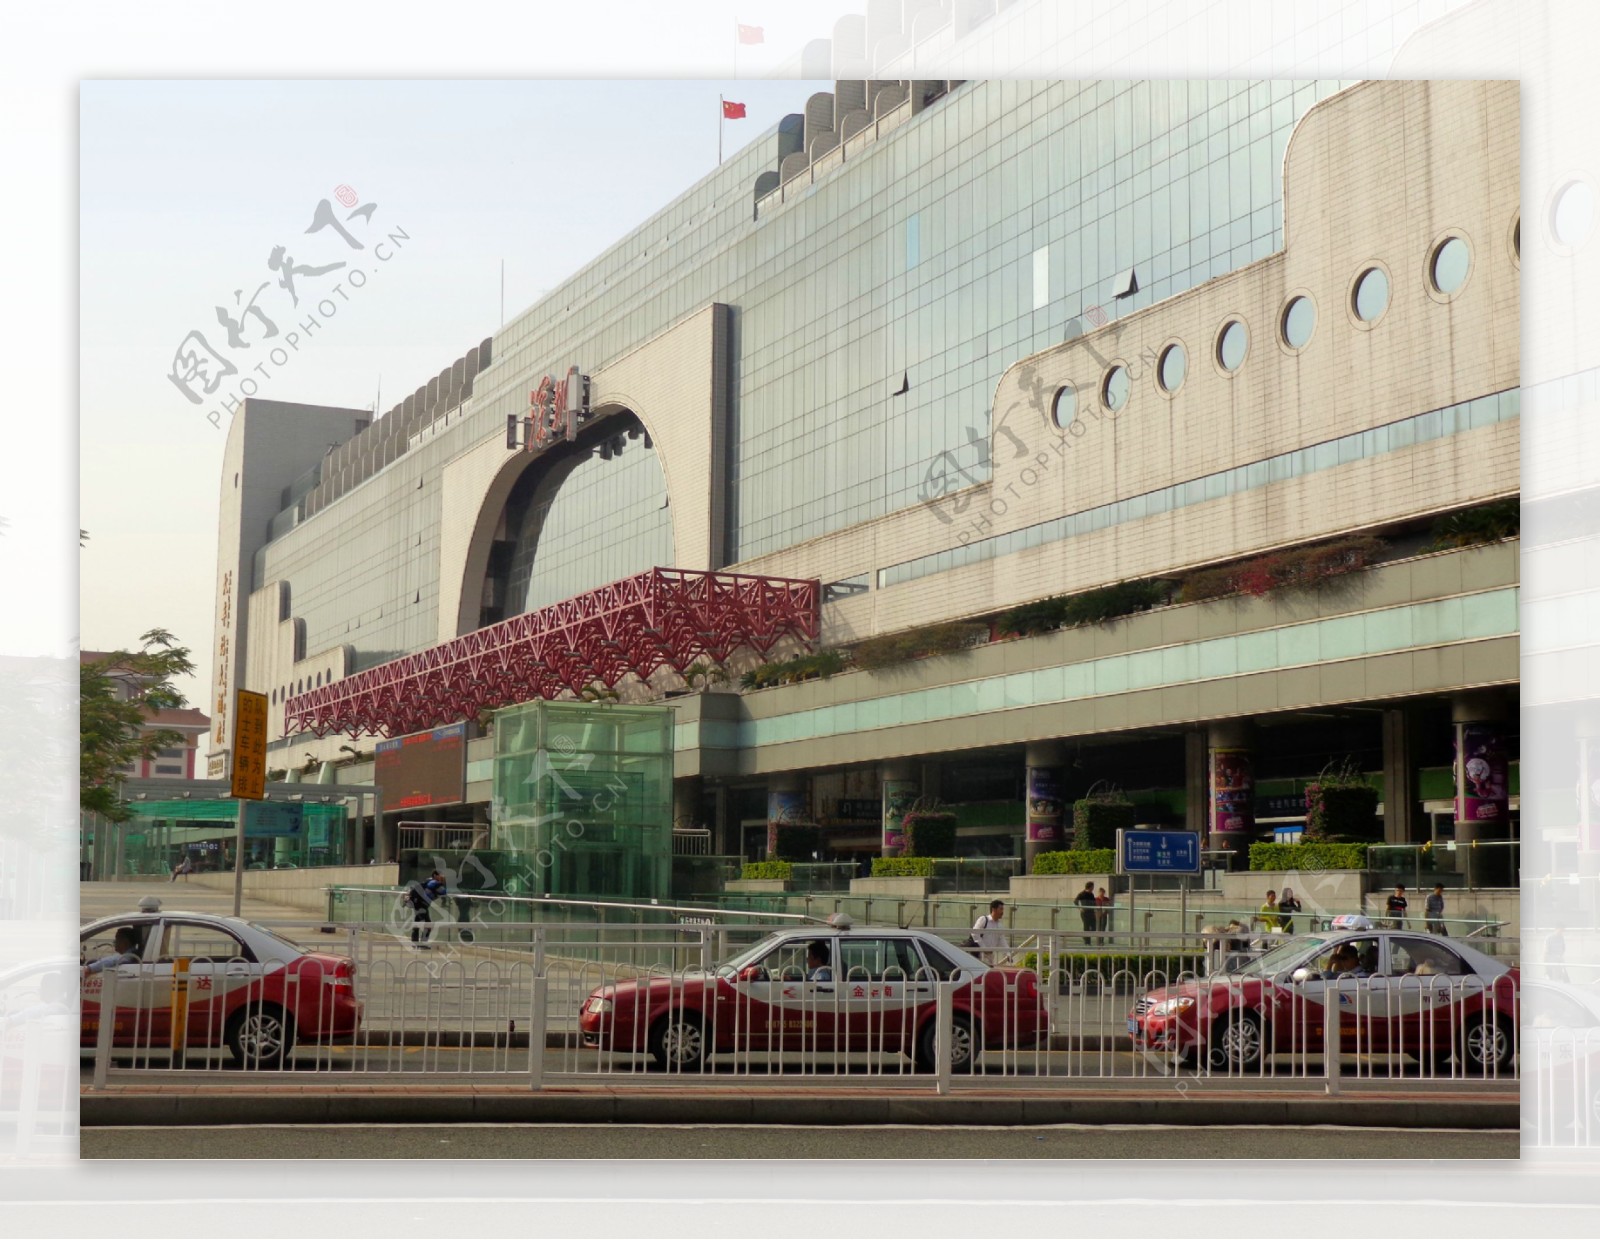 深圳火车站图片